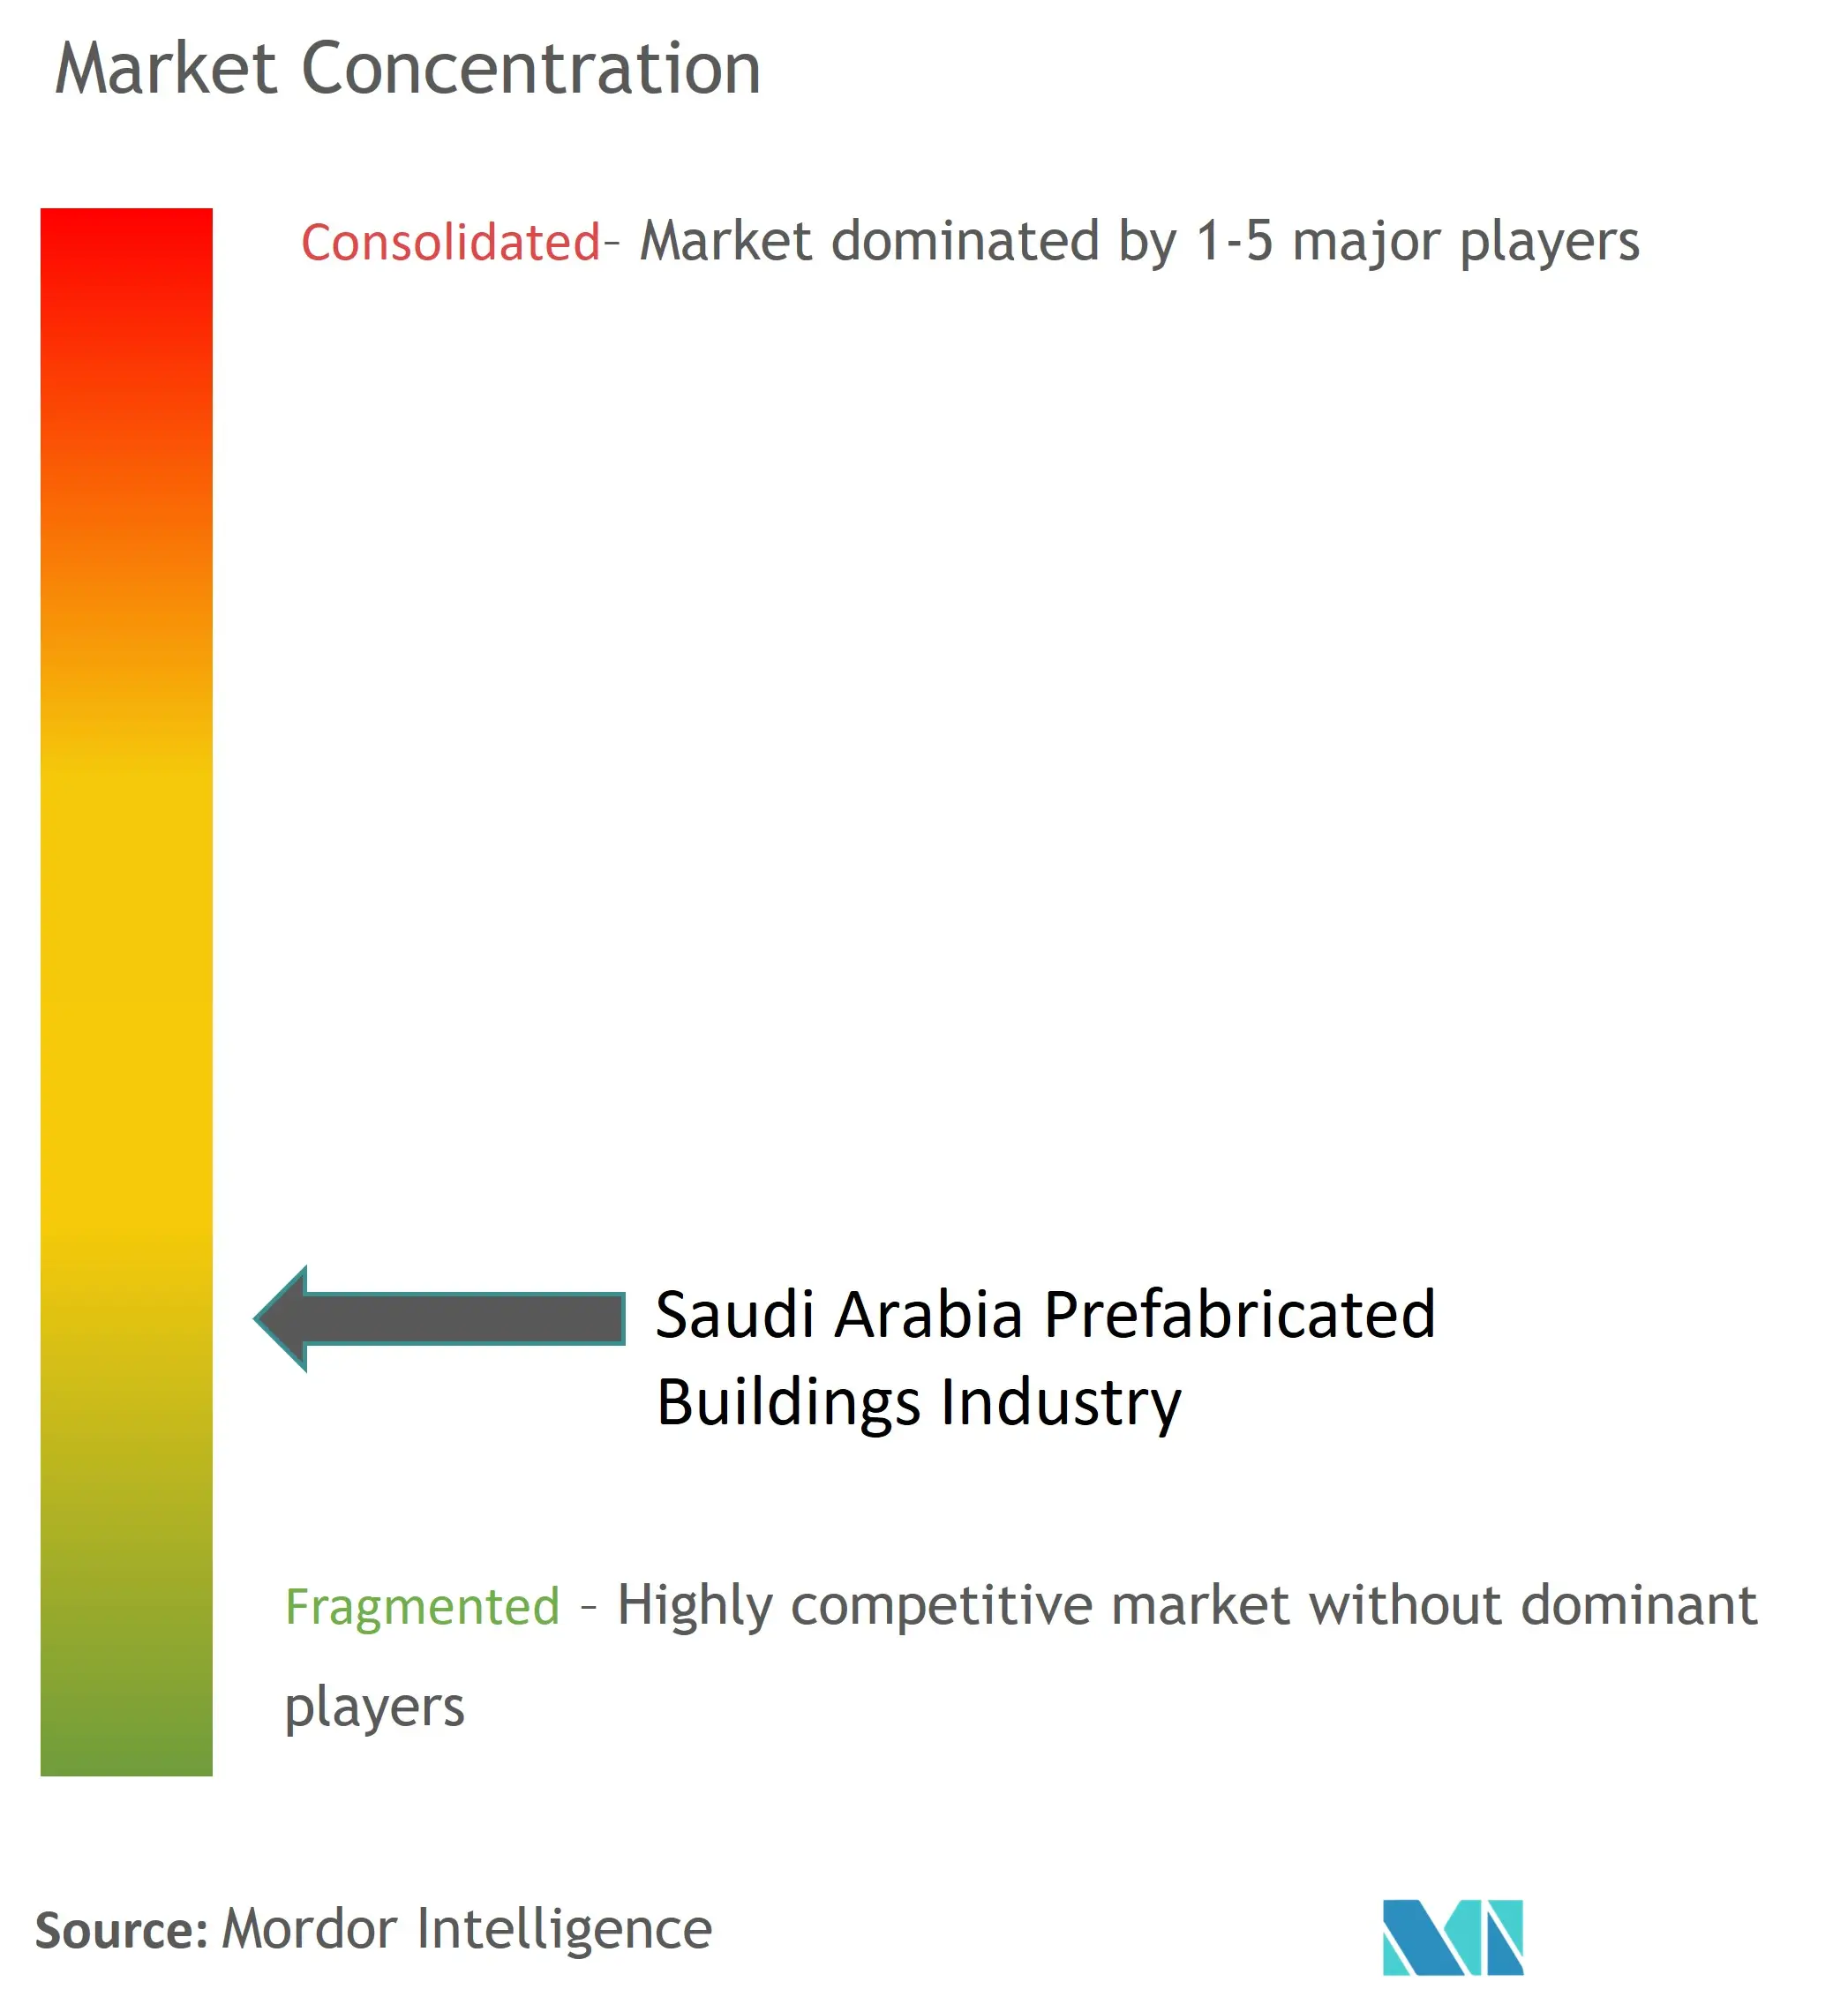 تركز سوق المباني الجاهزة في المملكة العربية السعودية